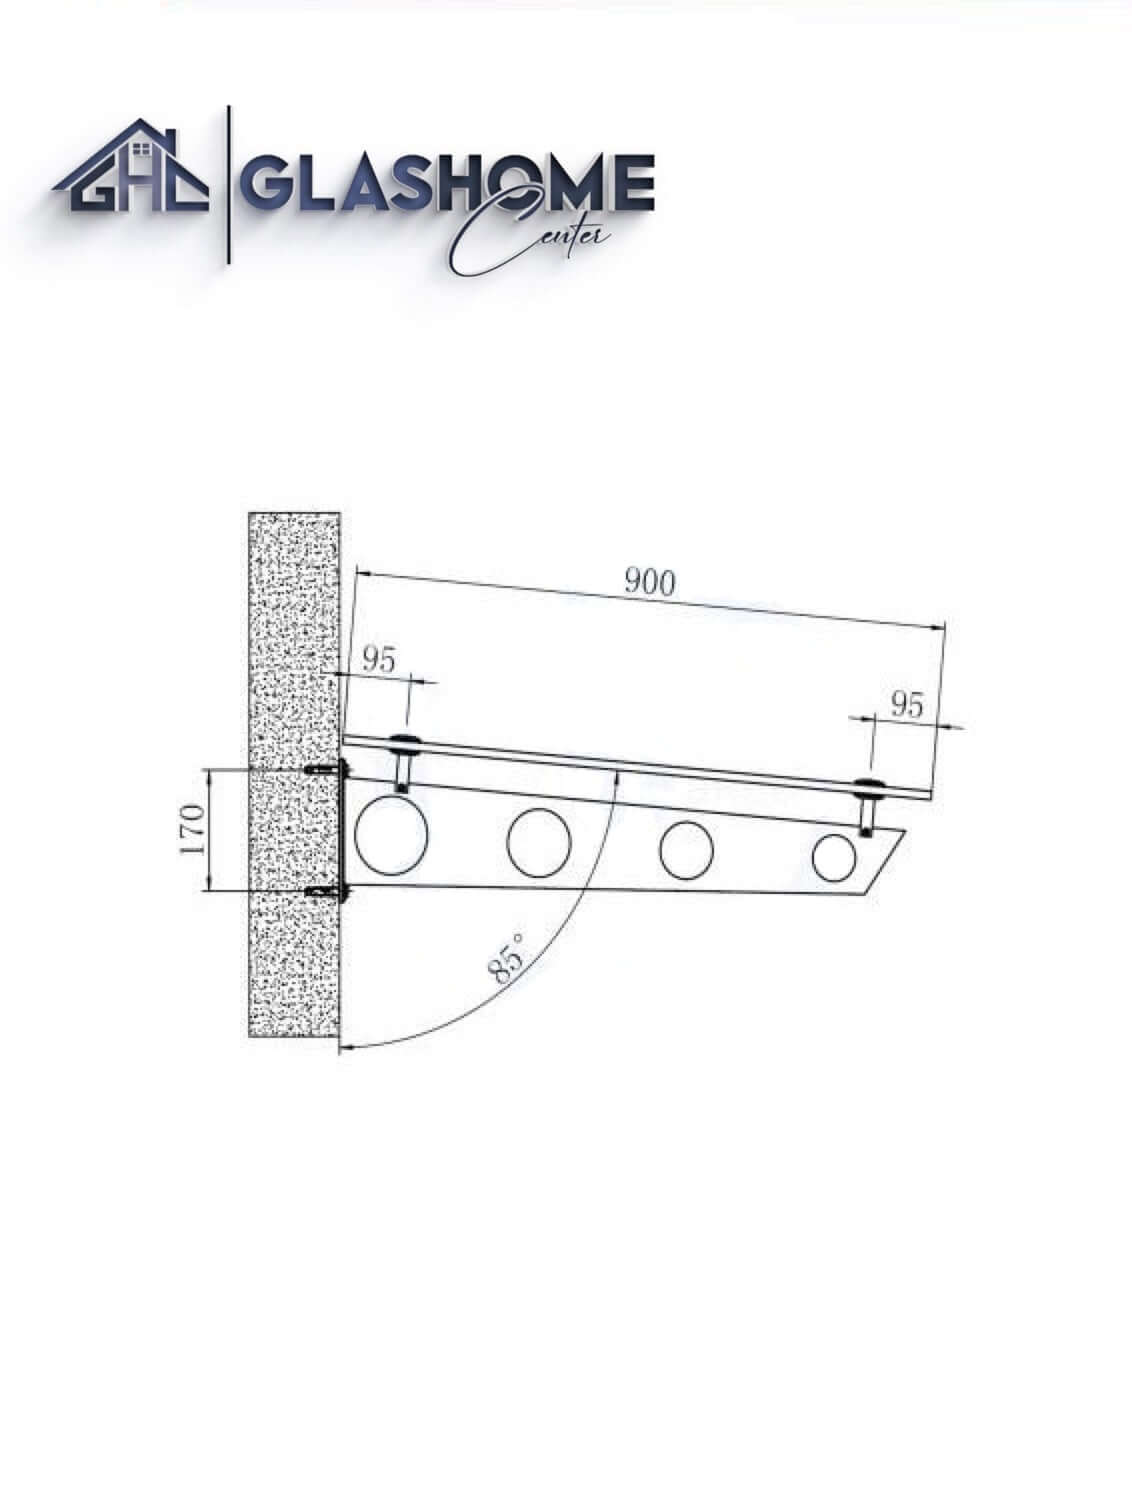 GlasHomeCenter - Glasvordach - Grauglas - 250x90cm - 13.1mm VSG - inkl. 3 schwarze Edelstahlhalterungen Variante "Stockholm"